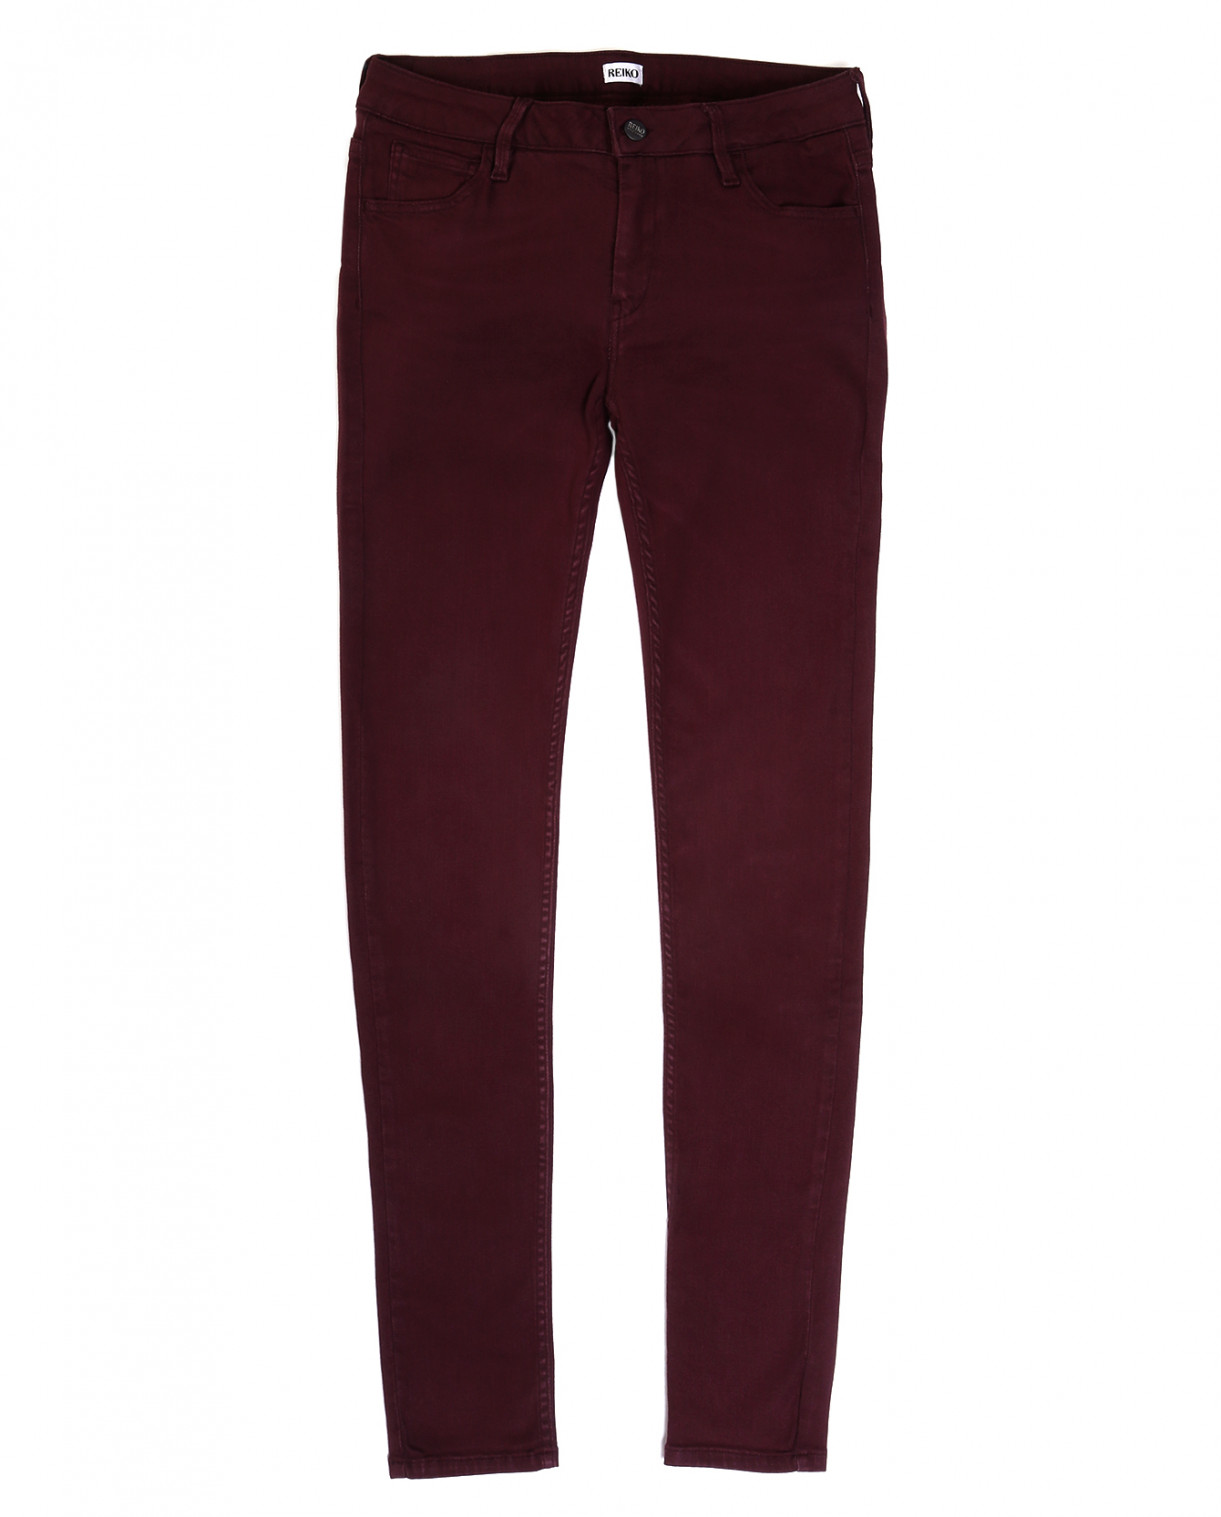 Легкие джинсы-скинни Reiko  –  Общий вид  – Цвет:  Красный